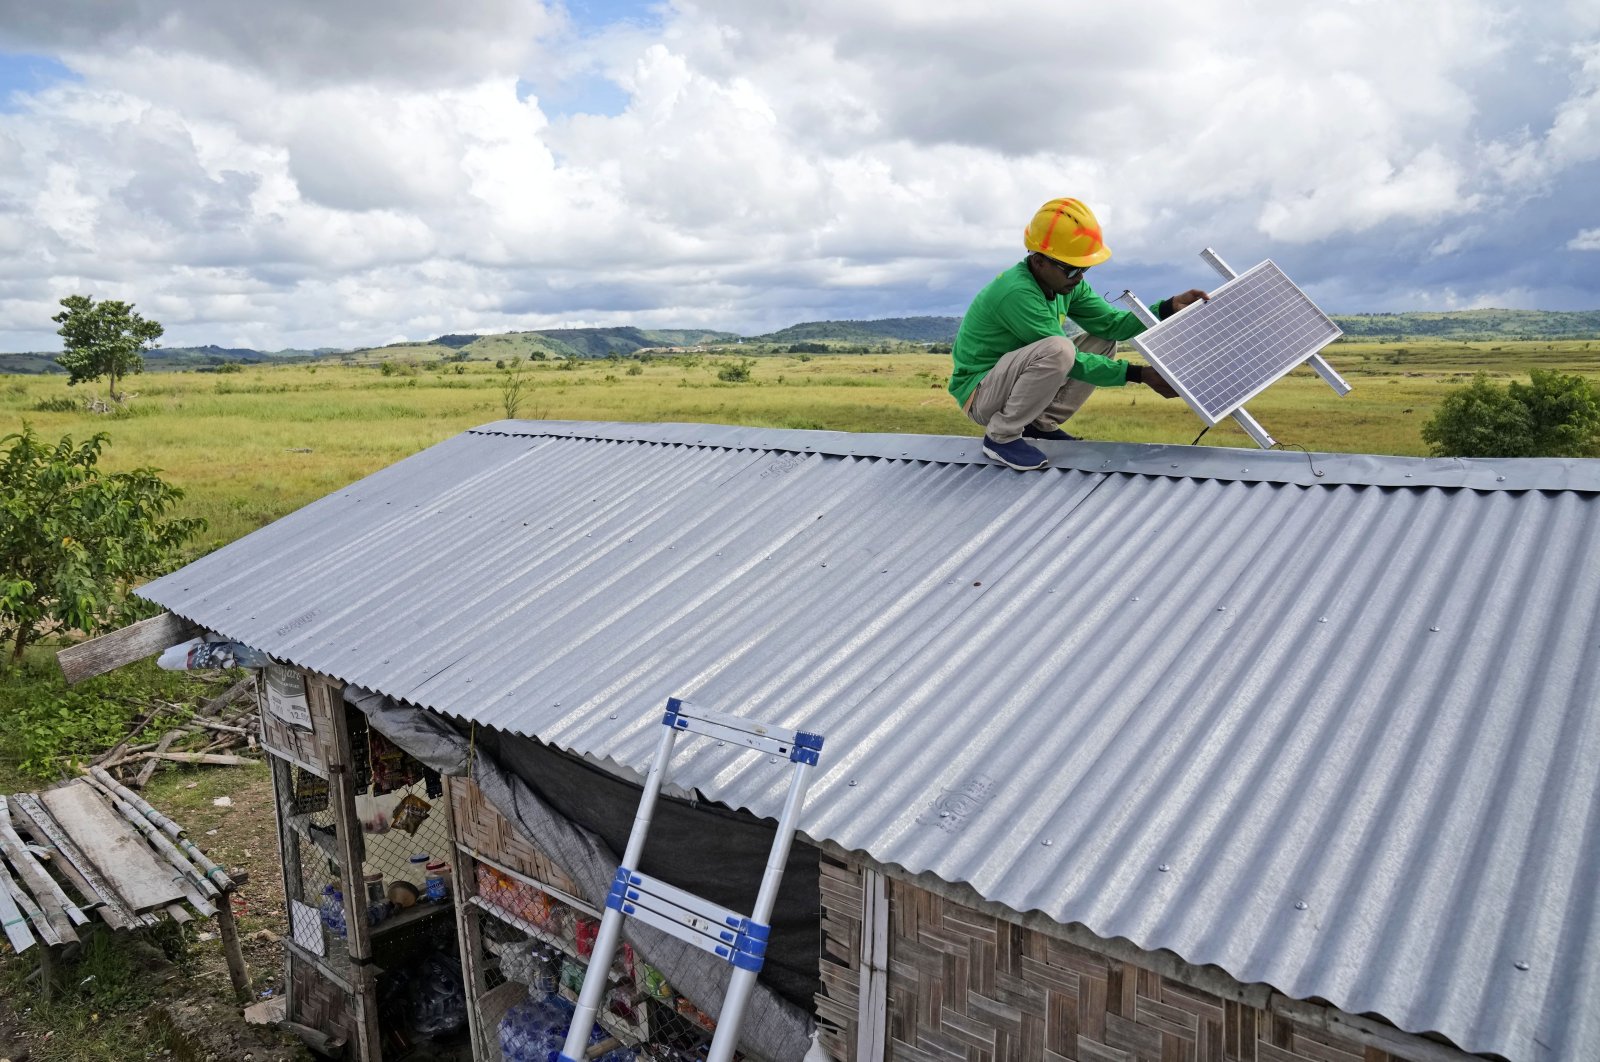 Tenaga surya off-grid membawa cahaya, waktu, dan pendapatan ke Indonesia yang terpencil